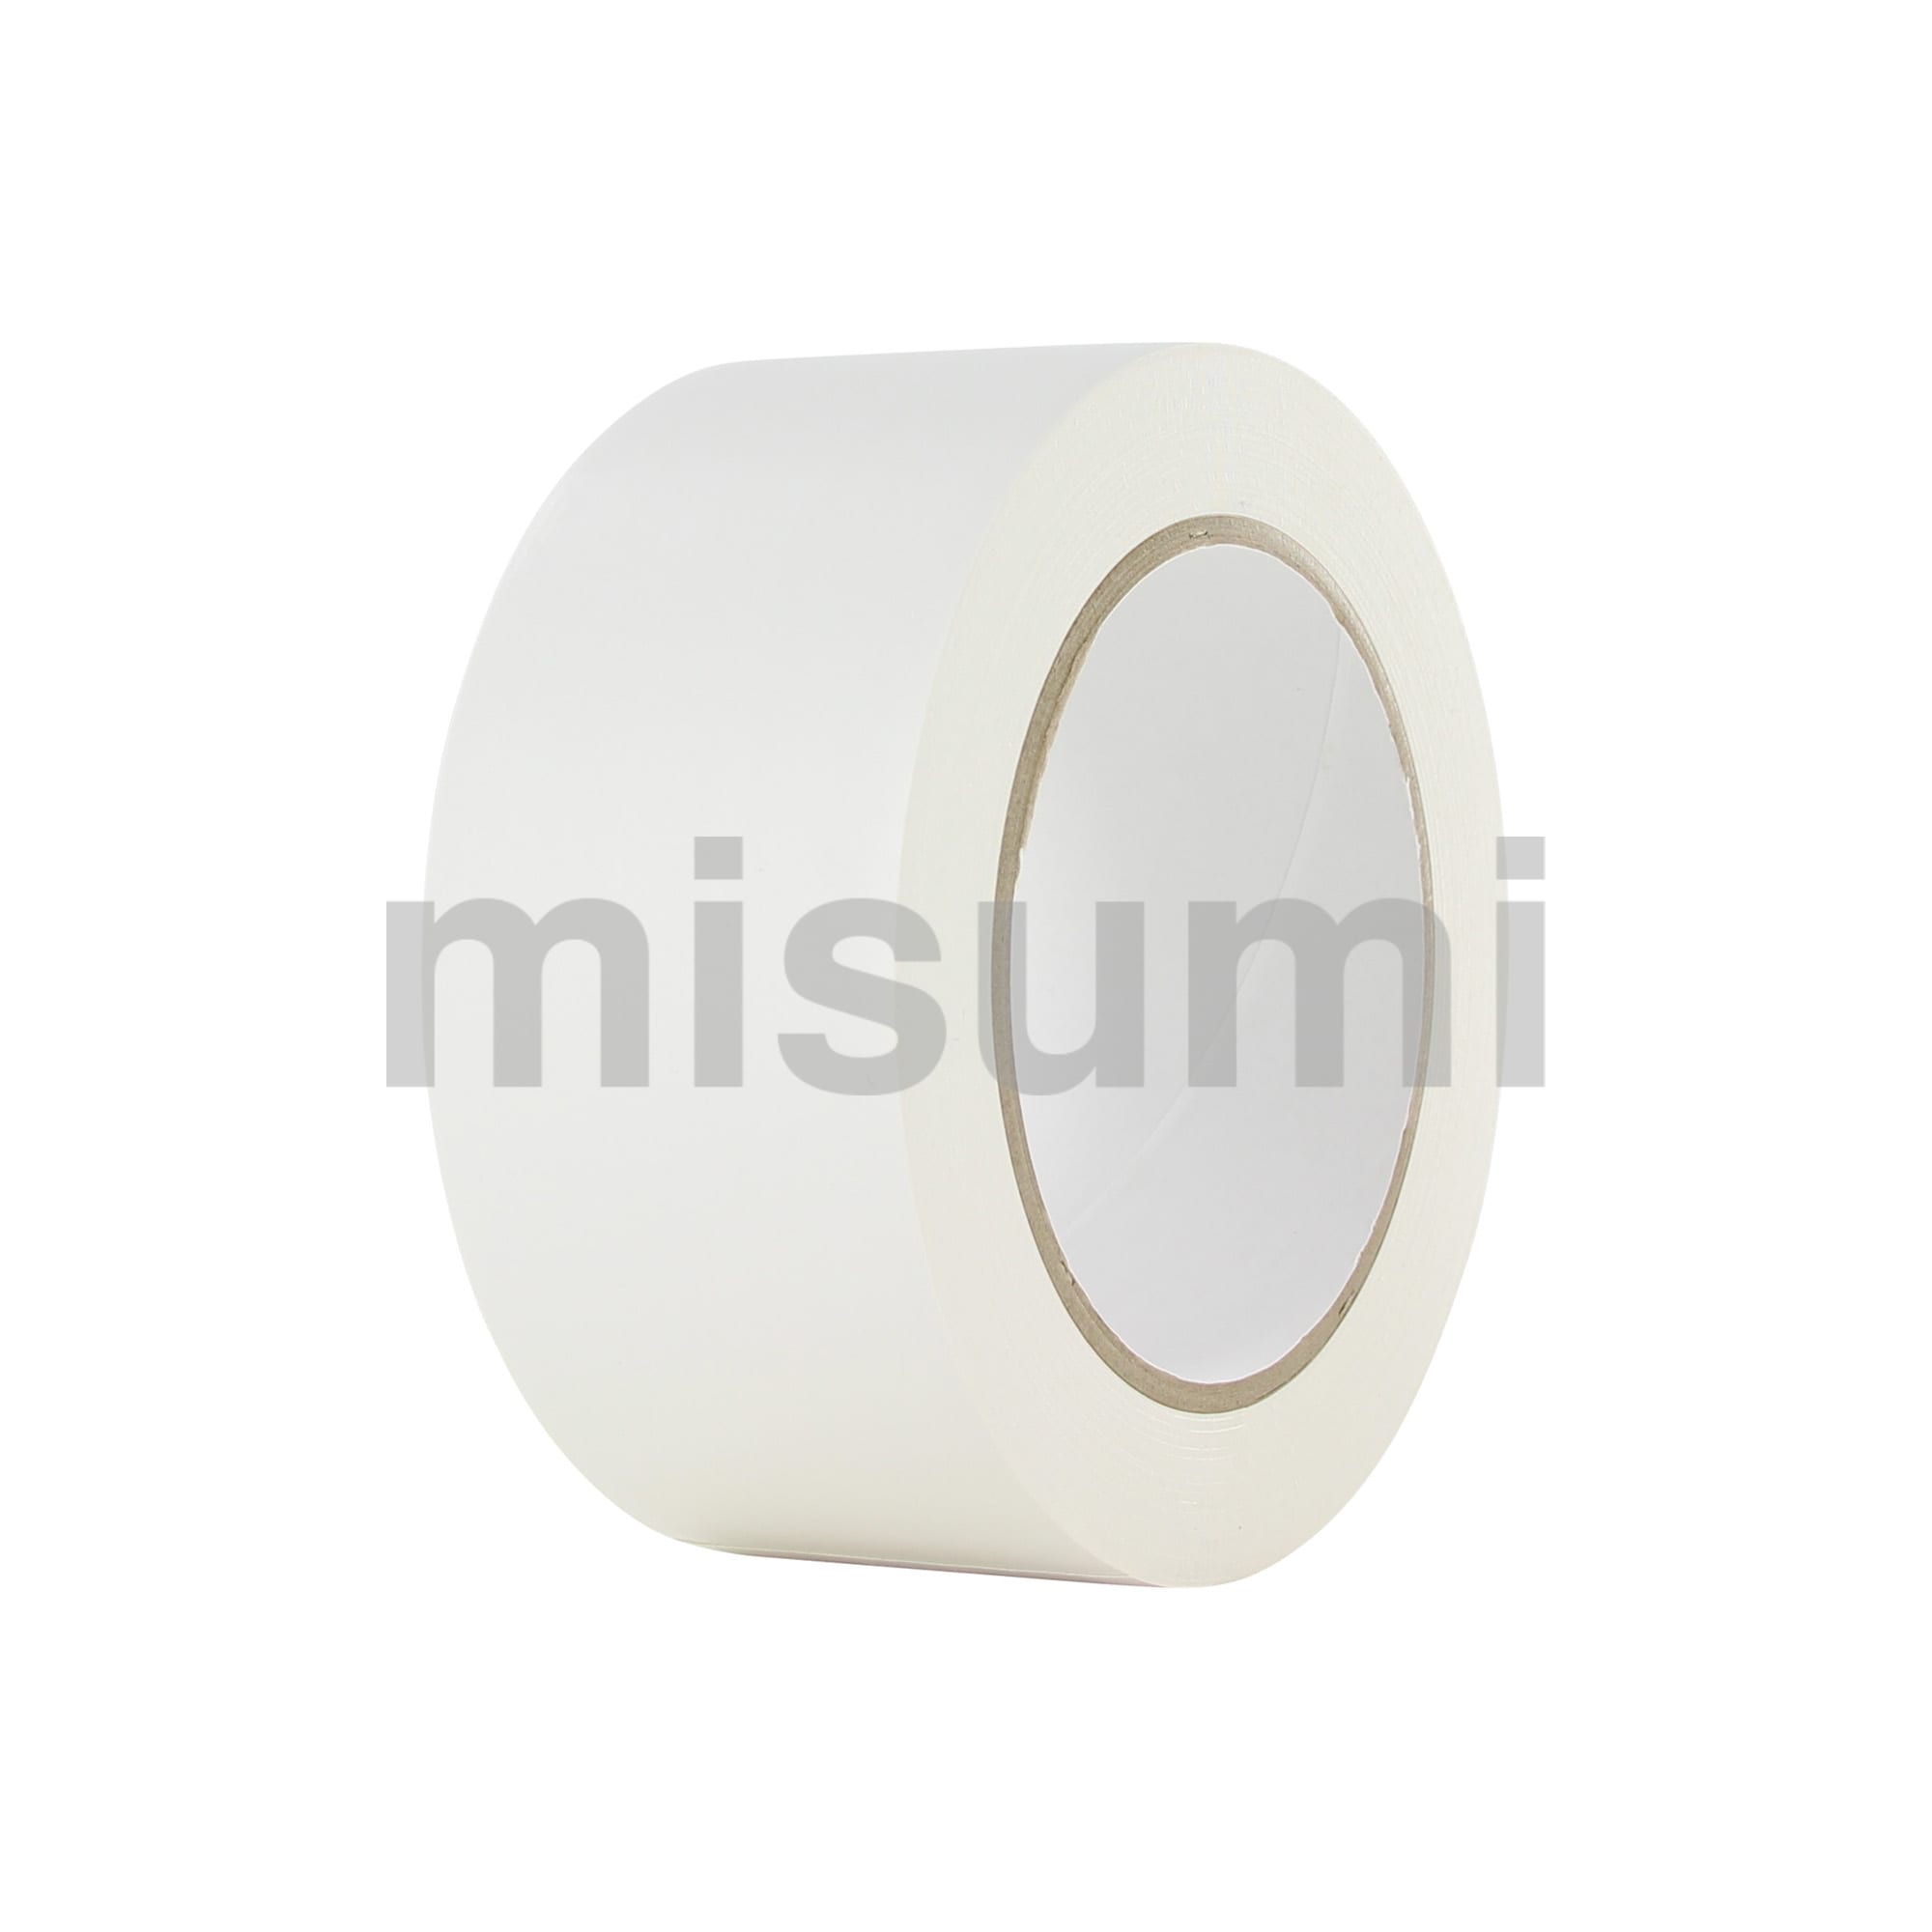 ラインテープ 白・黄・トラ PVCLT101 アズワン MISUMI(ミスミ)